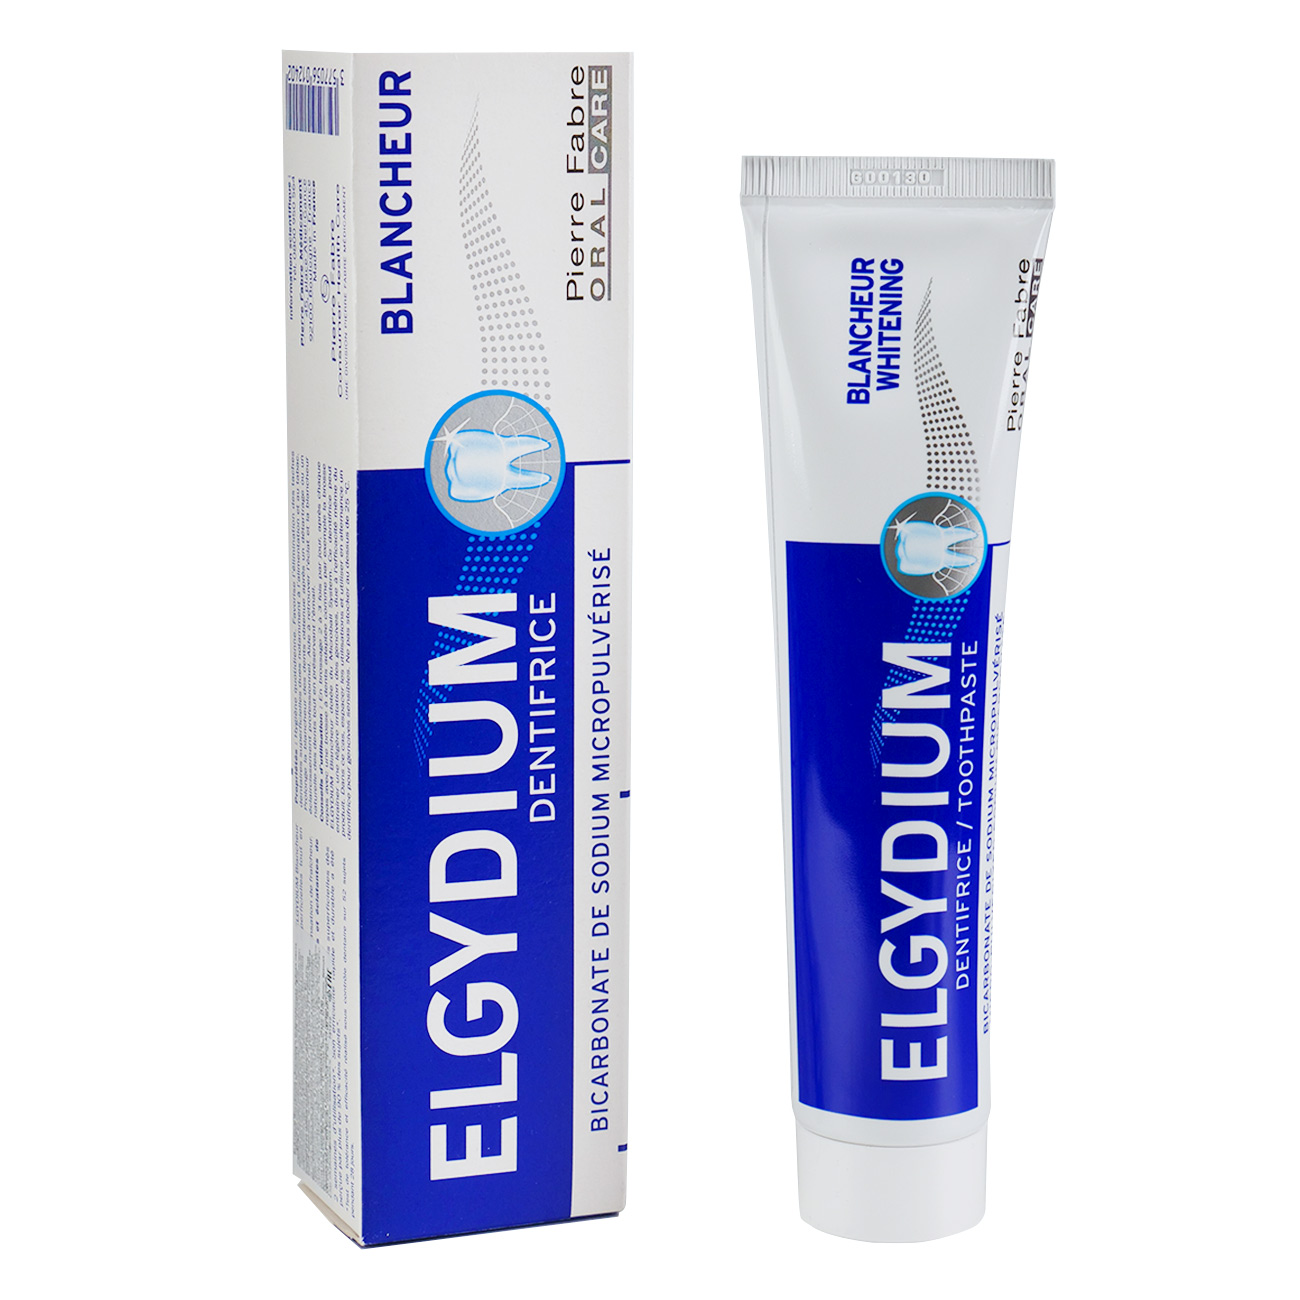 Зубная паста Эльгидиум зубная паста pierre fabre эльгидиум защита от кариеса 75 мл